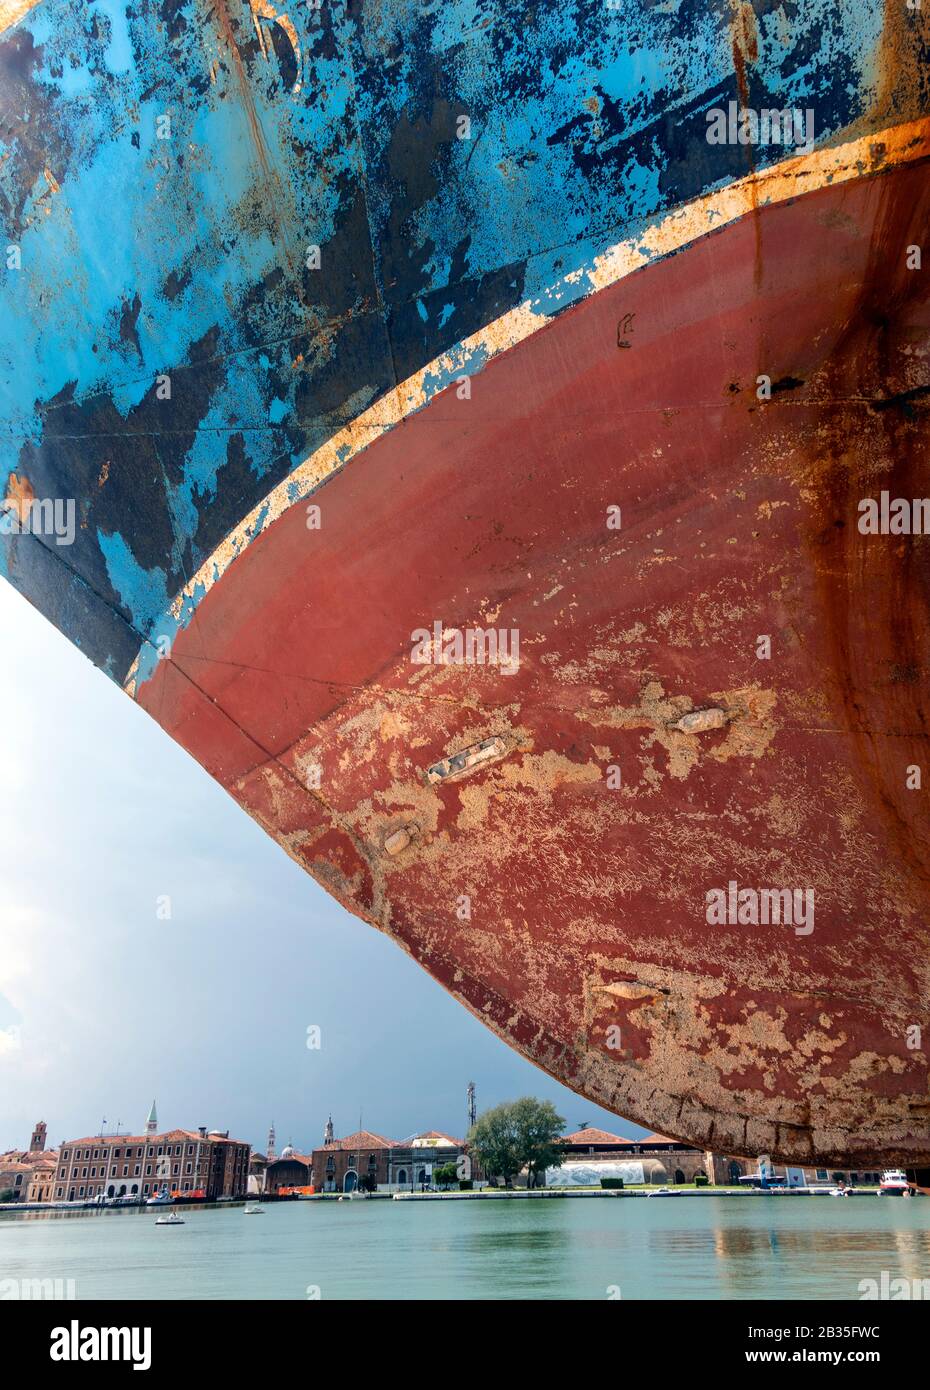 El naufragio de un barco que se muestra en la 58ª Bienal de Venecia, Arsenale, Italia 2019. Cientos de migrantes murieron cuando se capitaneó y se hundió frente a las costas de Libia en 2015. Por el artista Christoph Büchel, quien fue el encargado del proyecto "Barca Nostra" ("Nuestro barco") Foto de stock